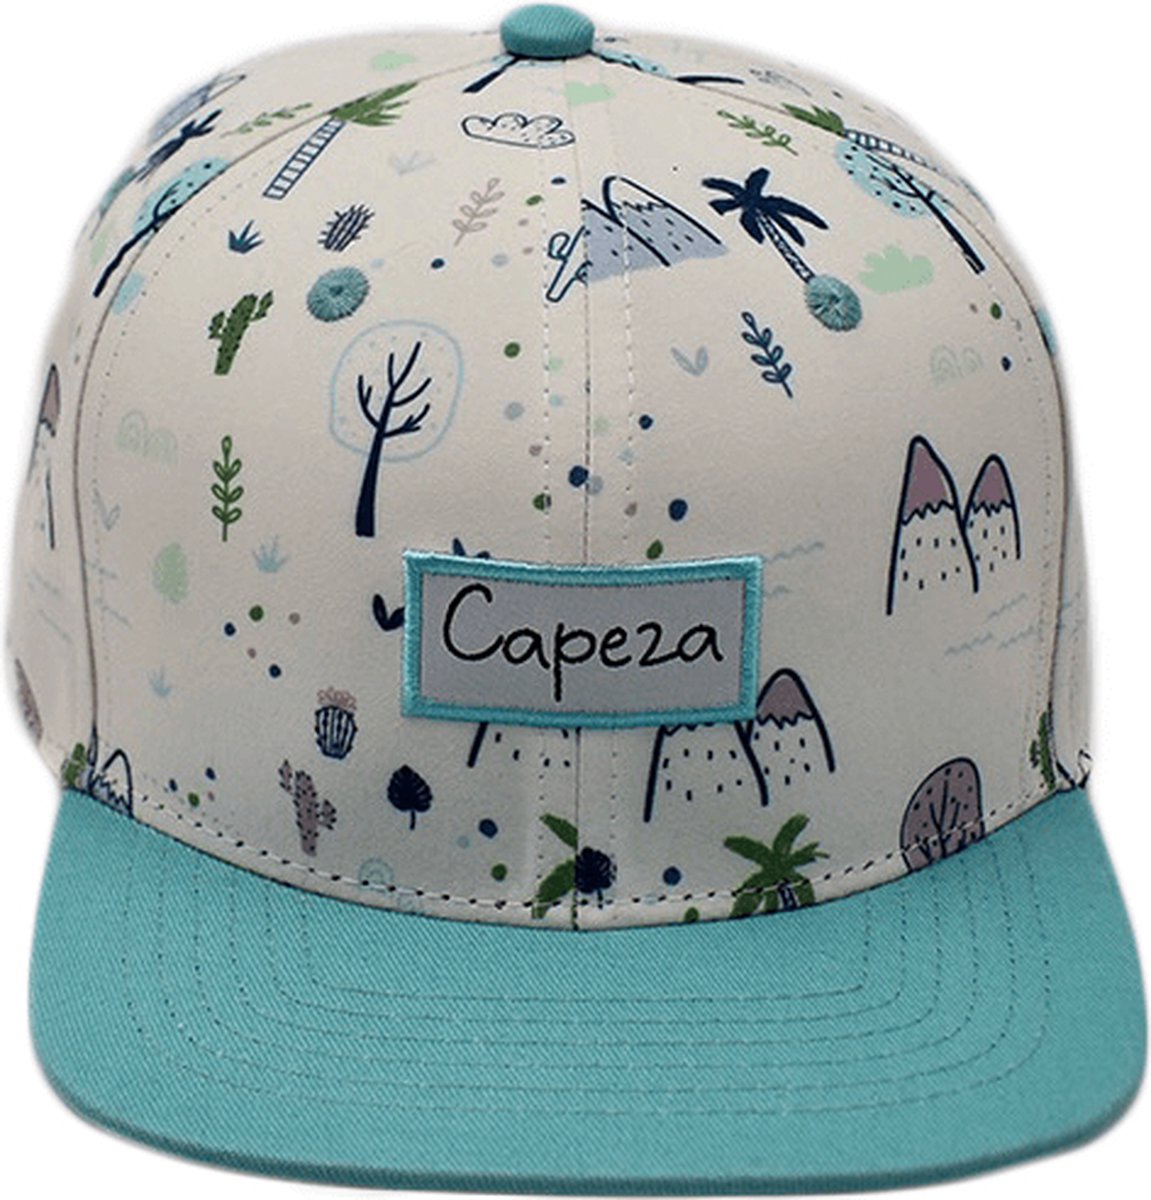 Capeza - Ayaé - Kind 6 jaar en hoger - Snapback kind - Kinderpet - Zomerpet - Pet voor kinderen - snapback cap -